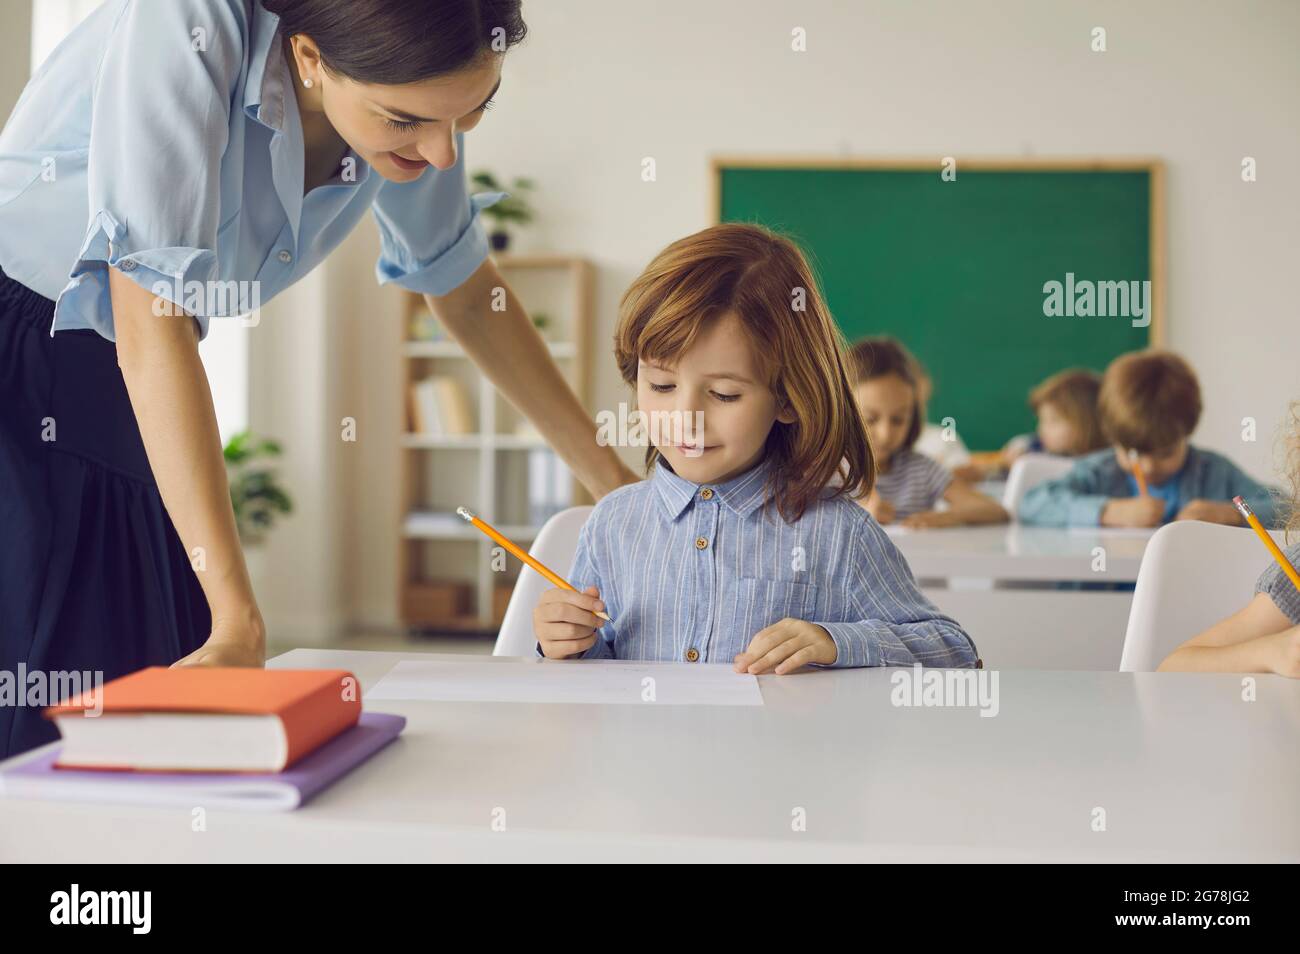 La estudiante de escuela primaria en clase hace una asignación escolar con la ayuda de una maestra. Foto de stock